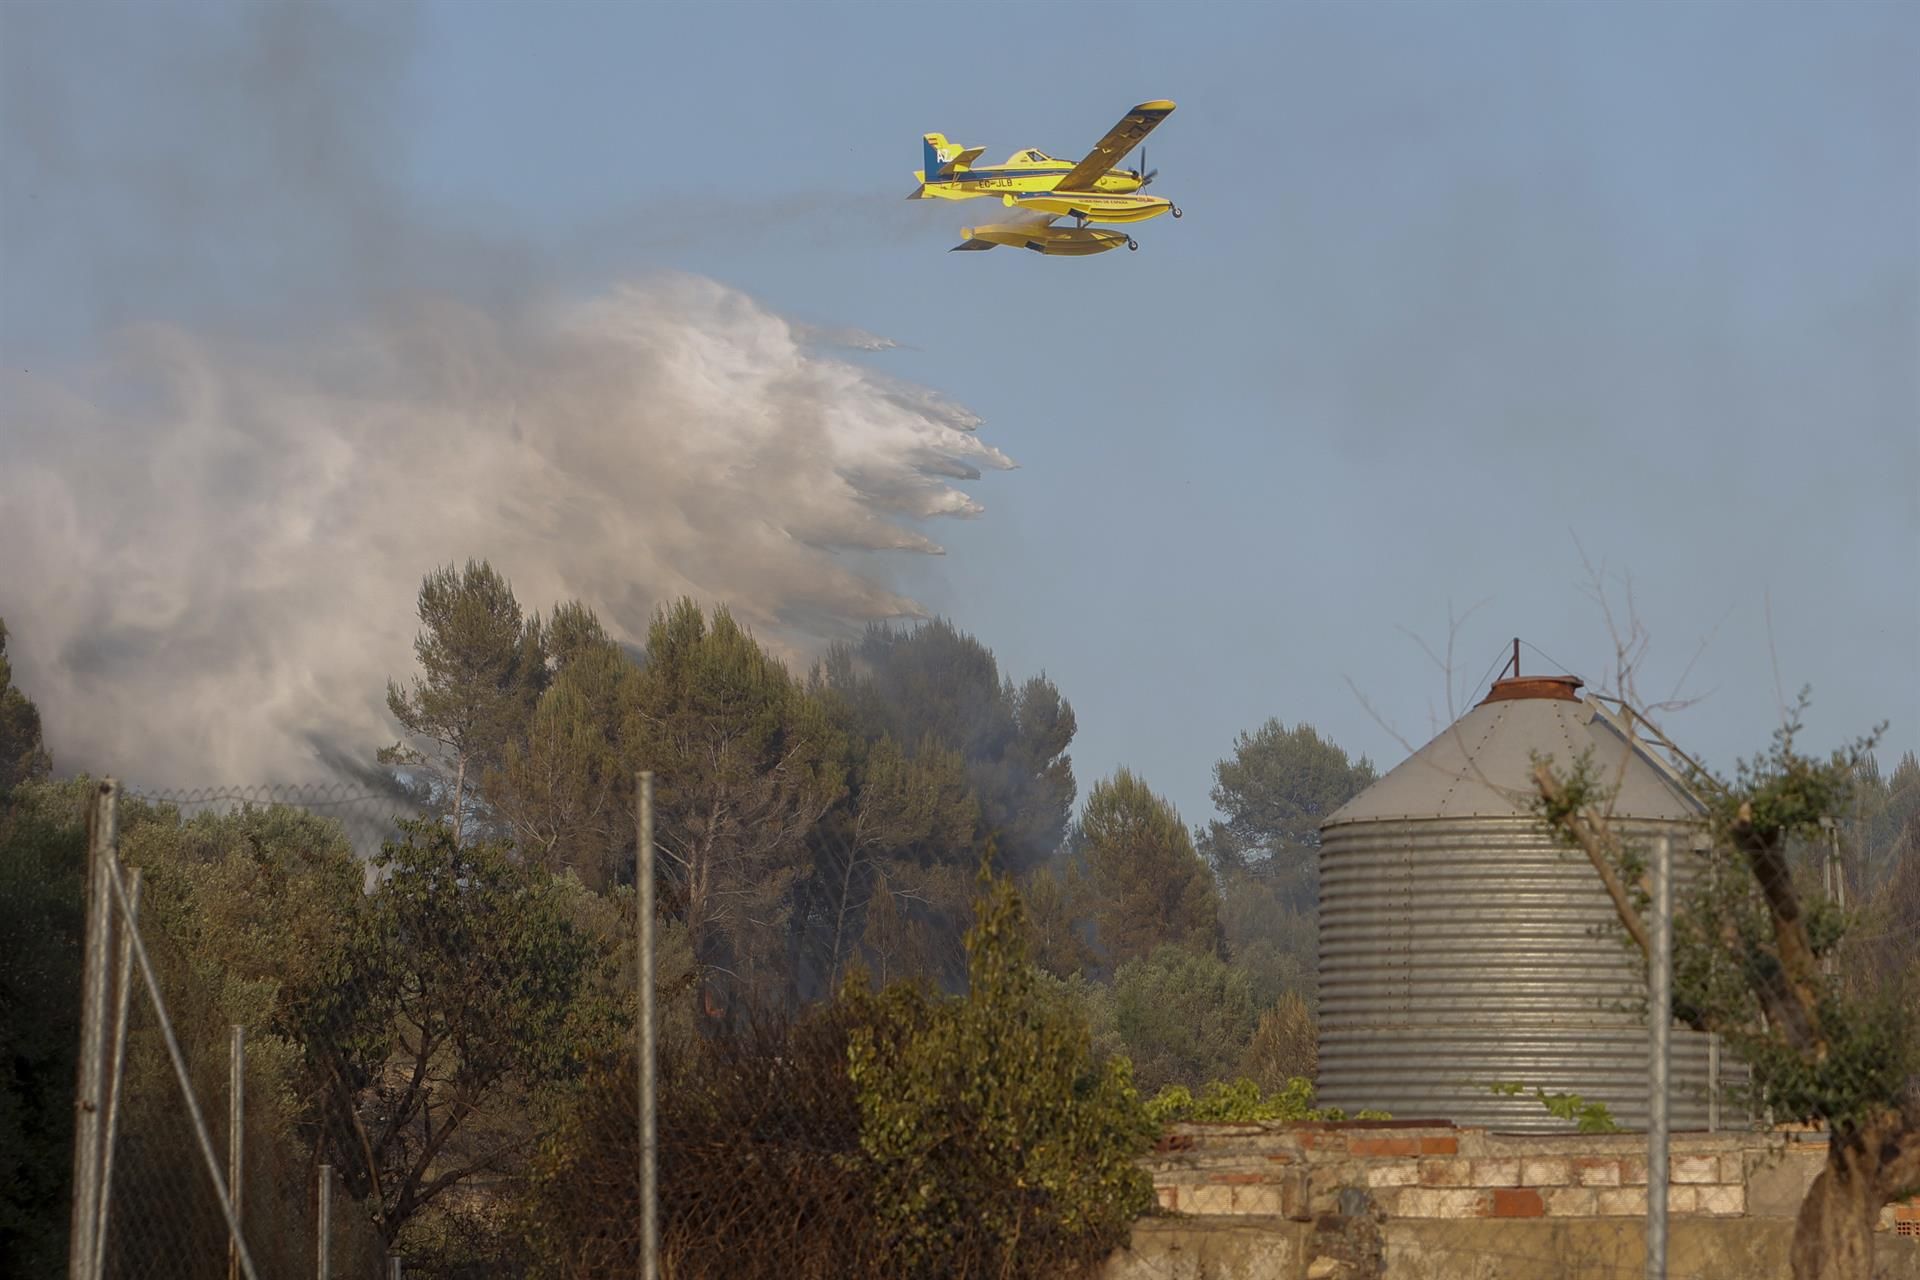 Galería: Las imágenes del incendio forestal de Caudiel